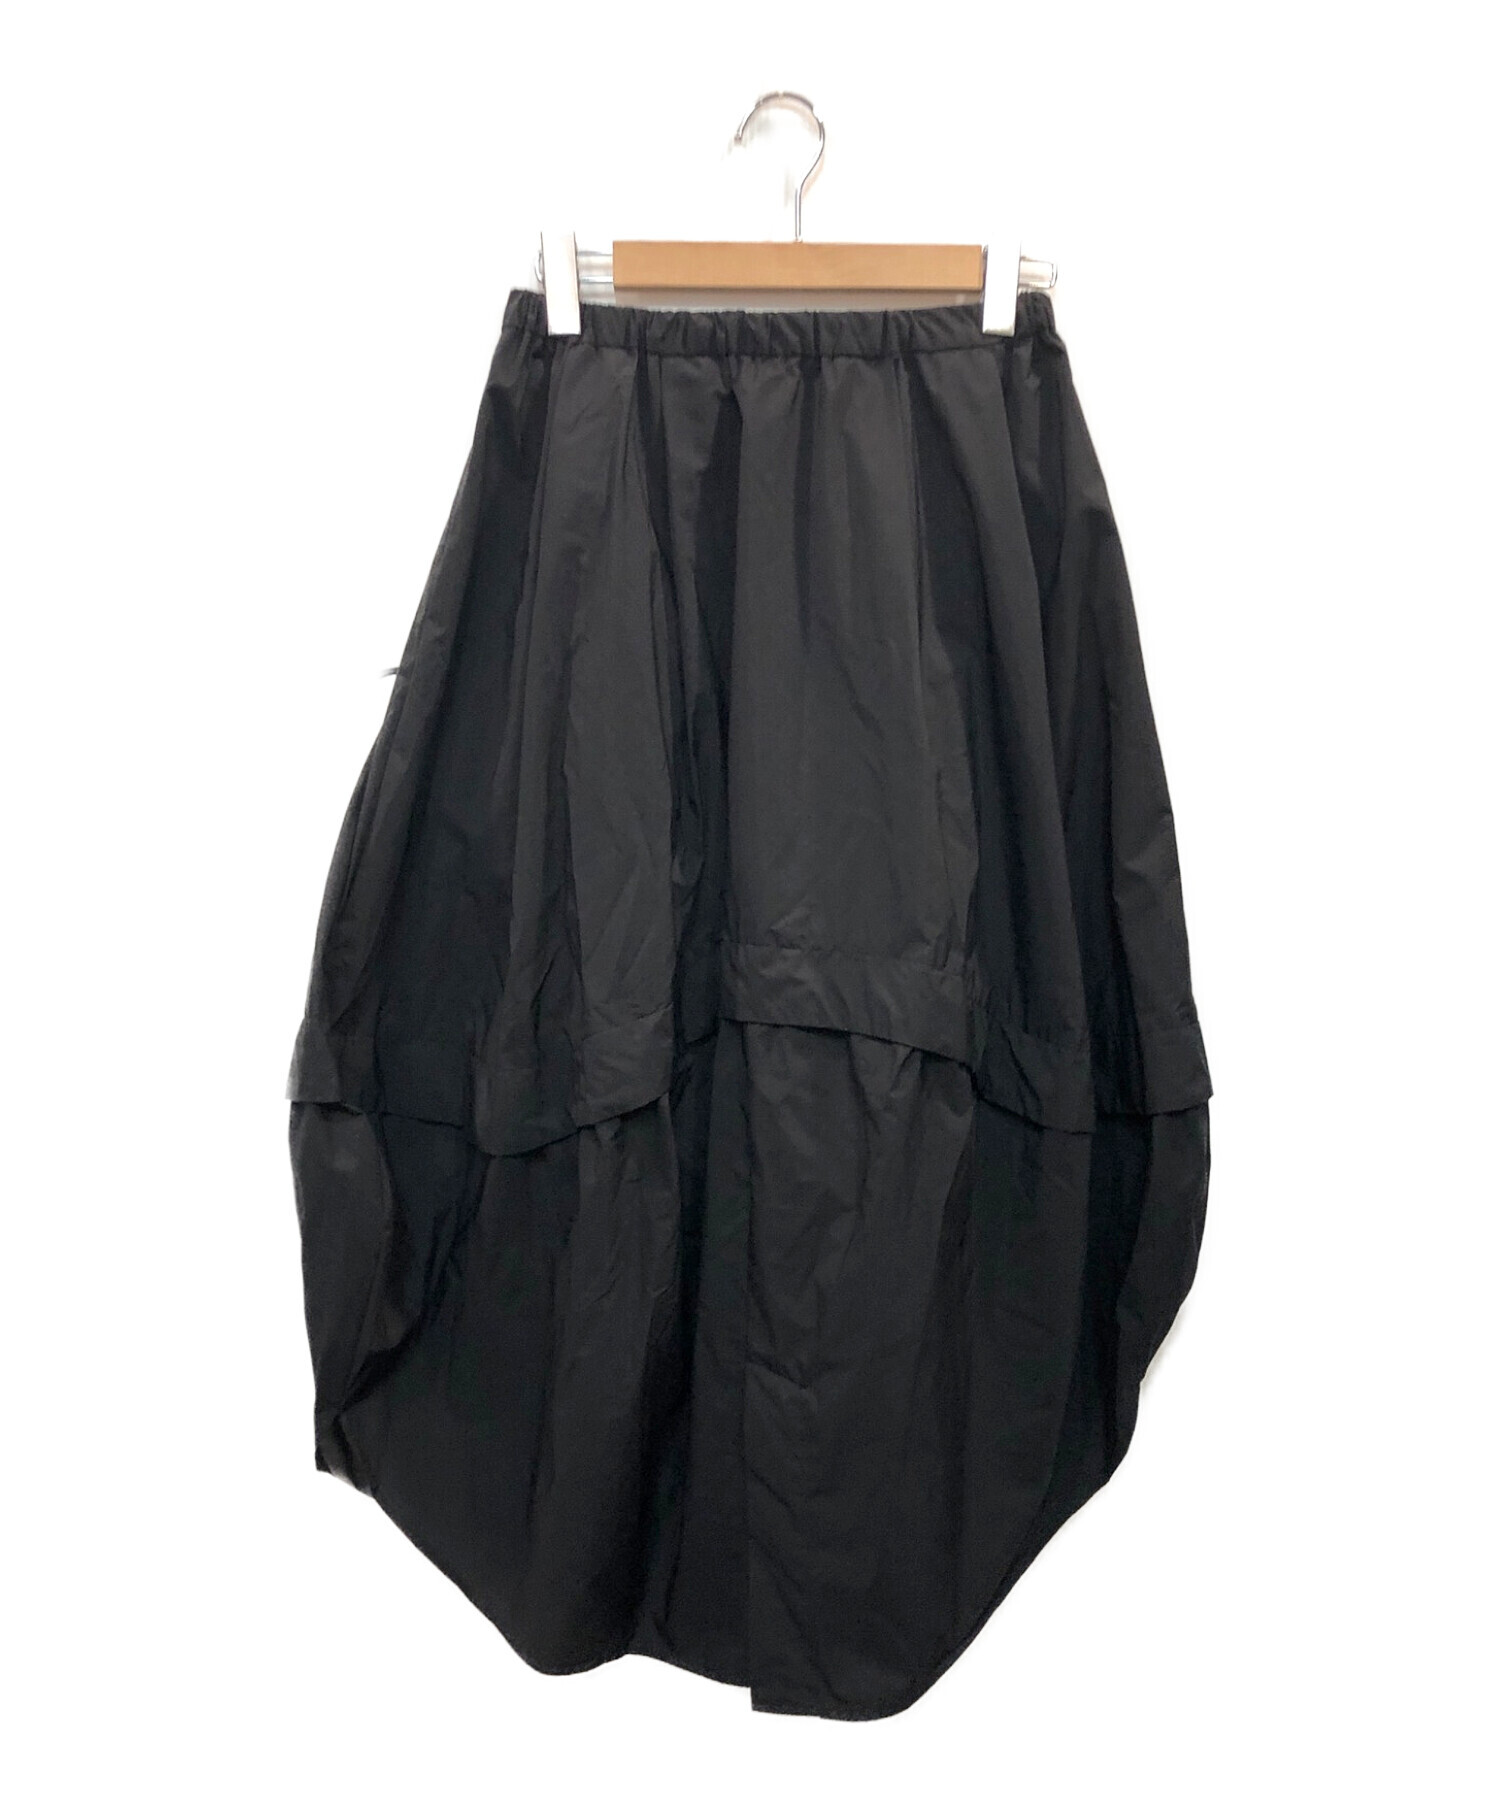 nagonstans (ナゴンスタンス) PERTEX SHIELDドロストコクーンスカート ブラック サイズ:S